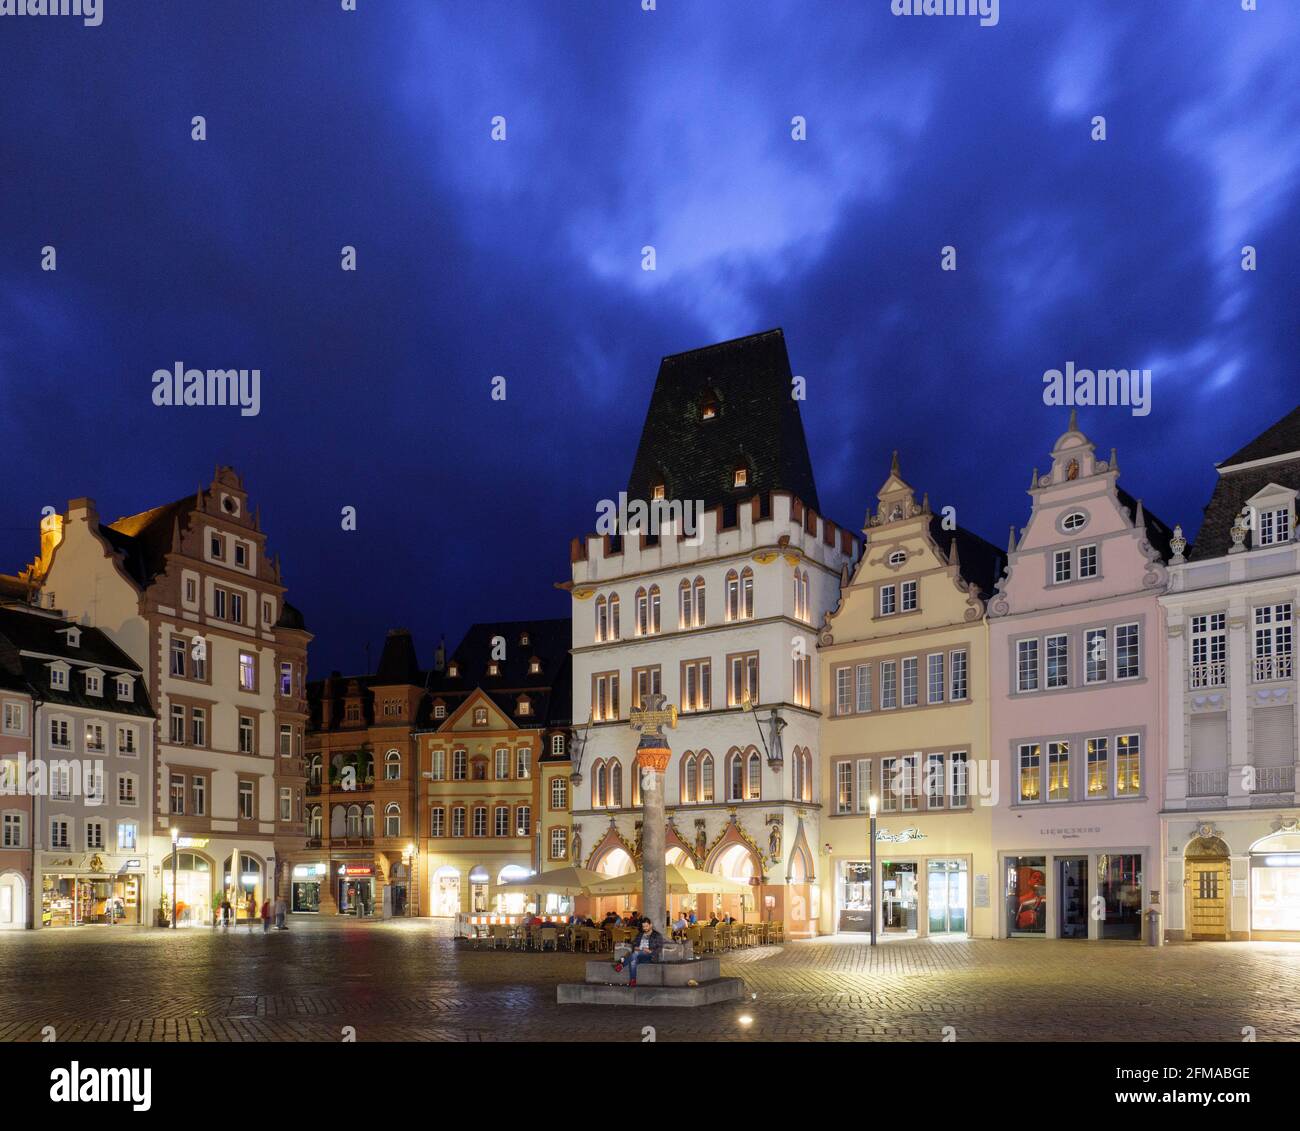 Main market at night, Trier, UNESCO World Heritage, Rhineland-Palatinate, Germany Stock Photo